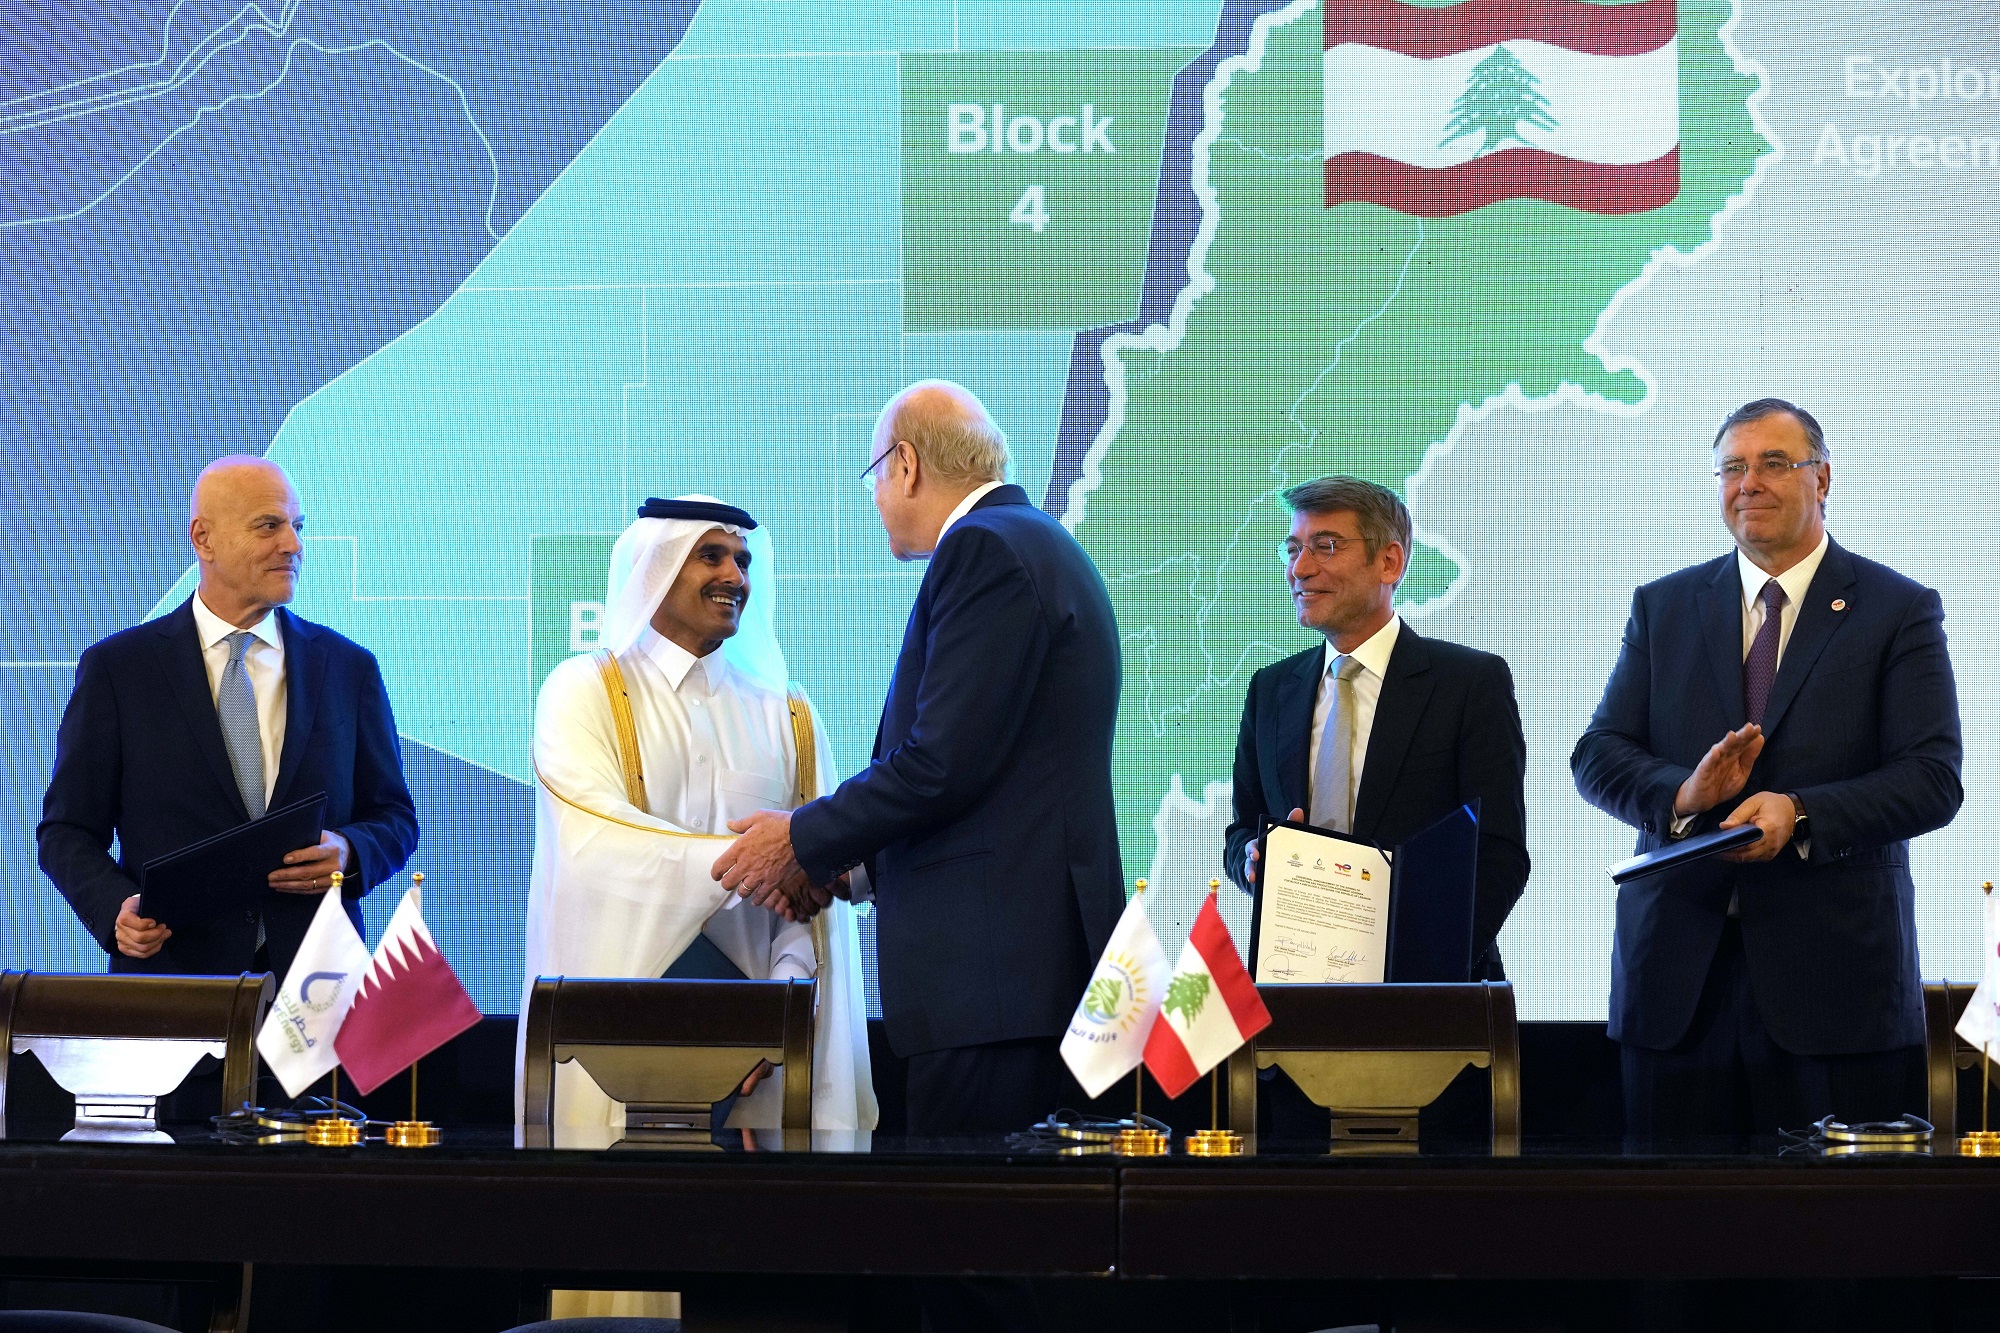 Λίβανος: Υπεγράφη συμφωνία ένταξης της Qatar Energy στην κοινοπραξία εξερεύνησης πετρελαίου και φυσικού αερίου